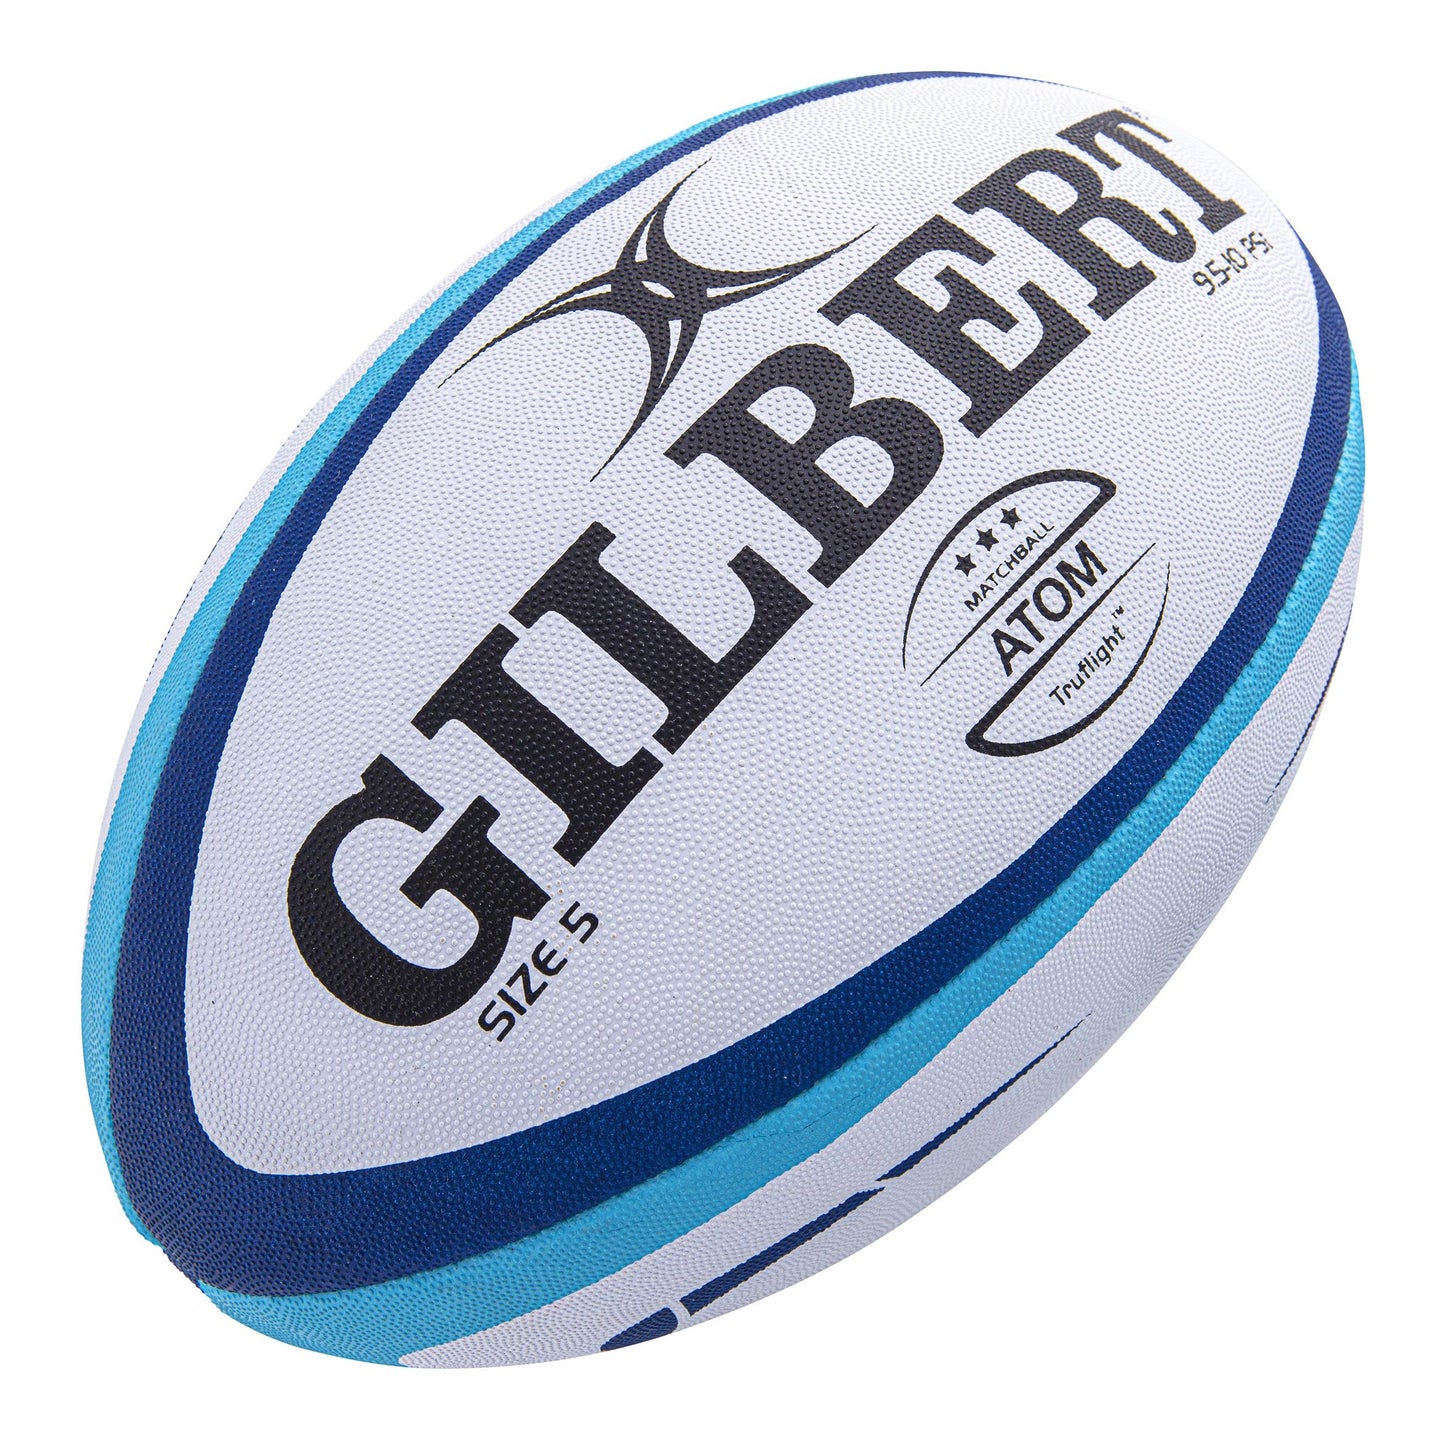 Gilbert Atom Rugby Match Ball